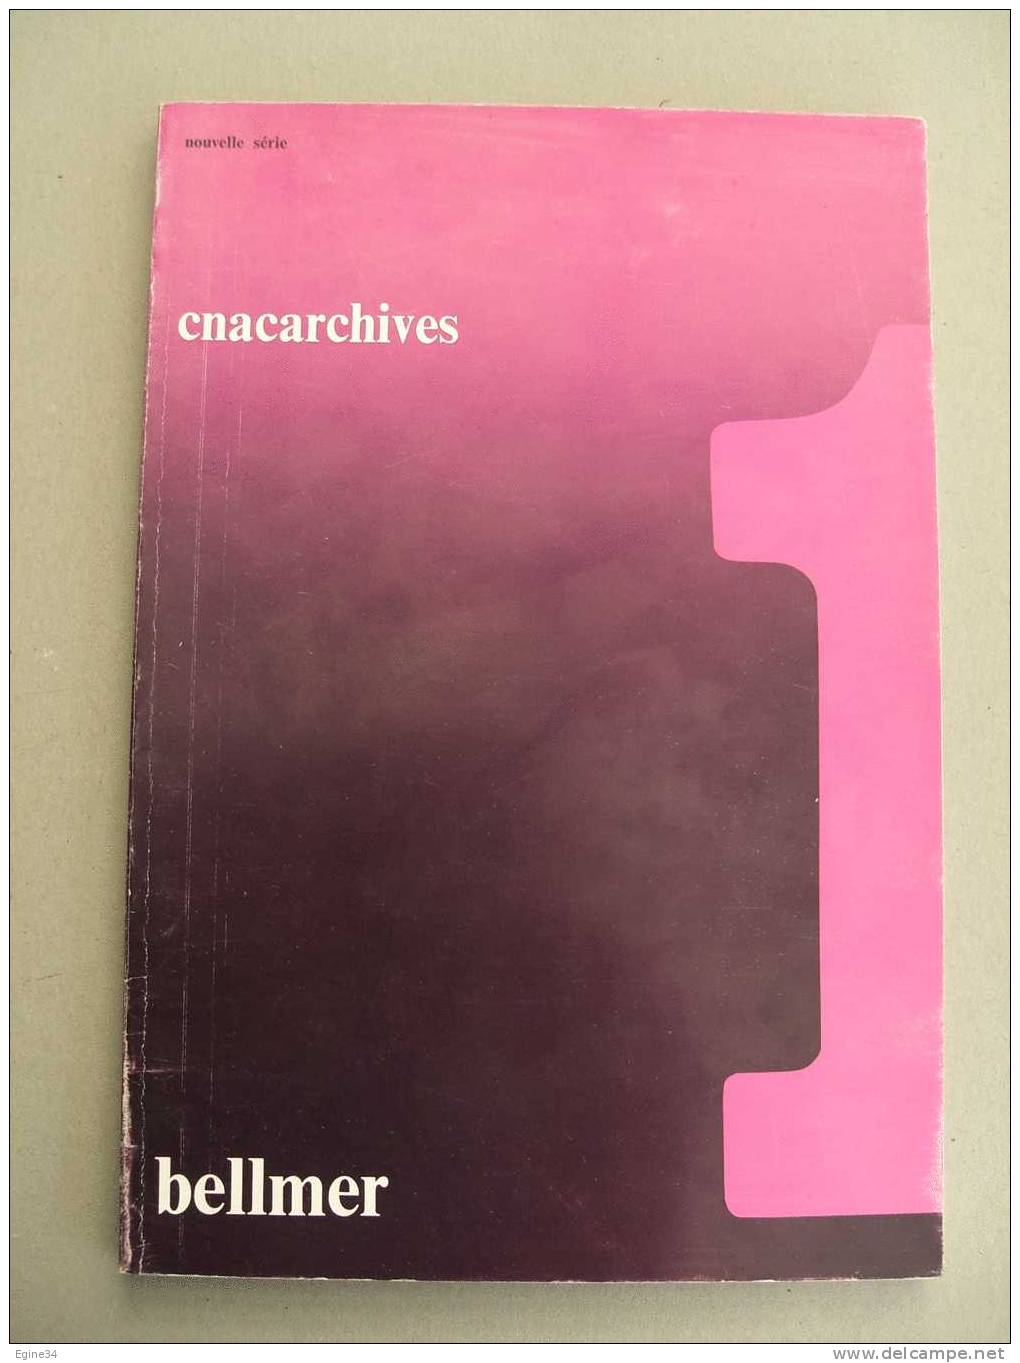 CNACARCHIVES Nouvelle Série No 1 -  BELLMER  - Textes De P. Eluard- H. Bellmer- N. Mitrani-  Bernard Noël- M. Crété. - Photographs